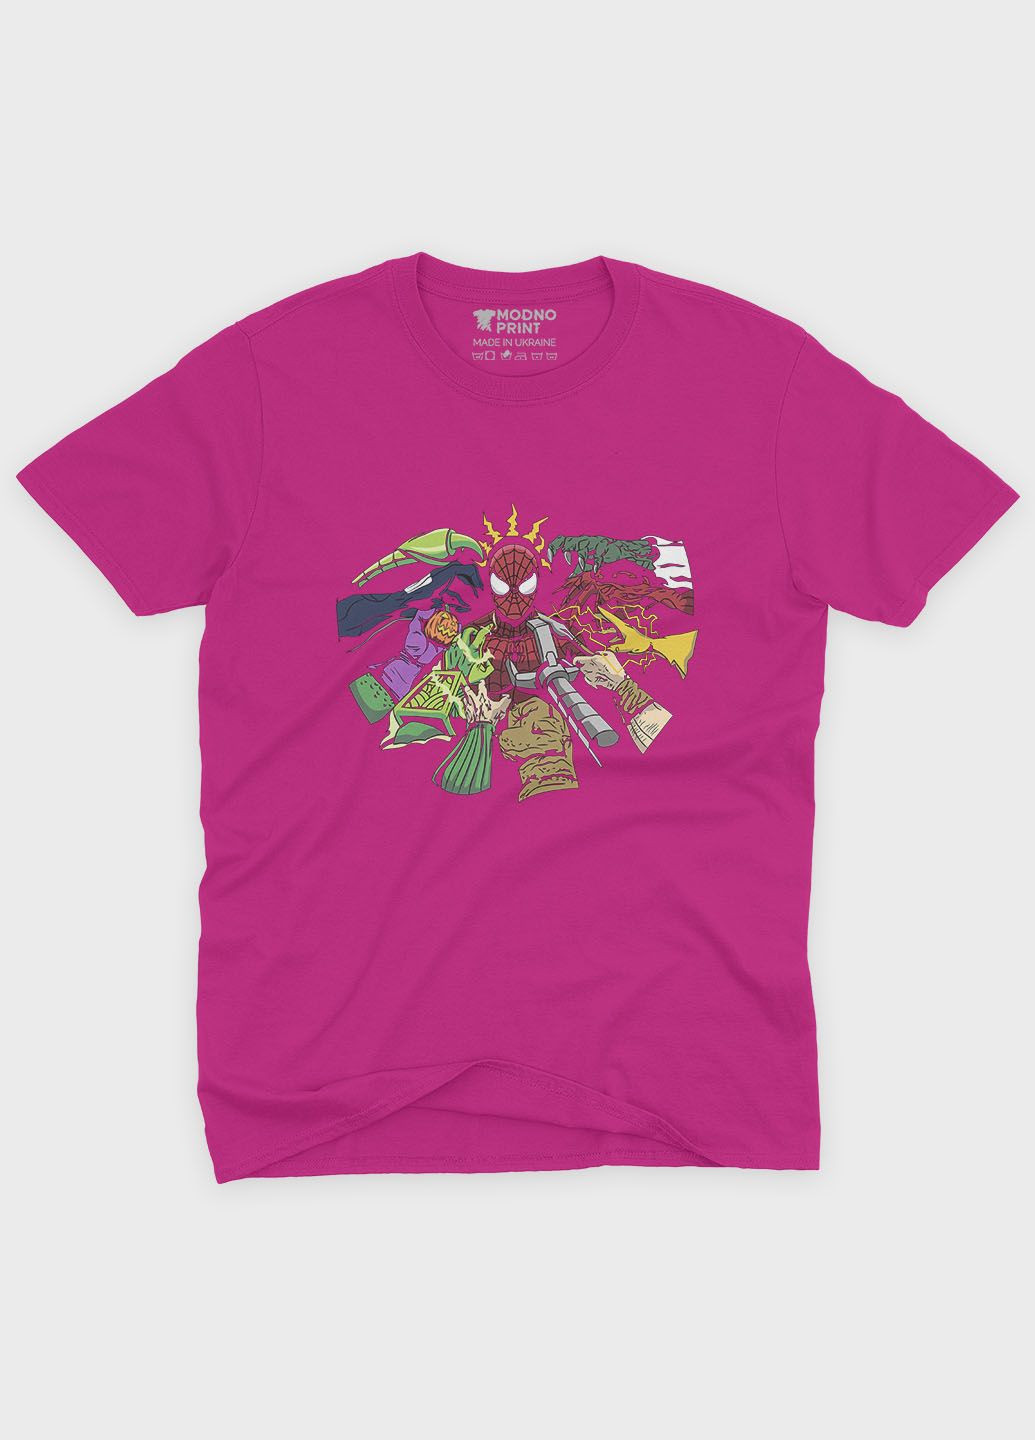 Розовая демисезонная футболка для мальчика с принтом супергероя - человек-паук (ts001-1-fuxj-006-014-014-b) Modno